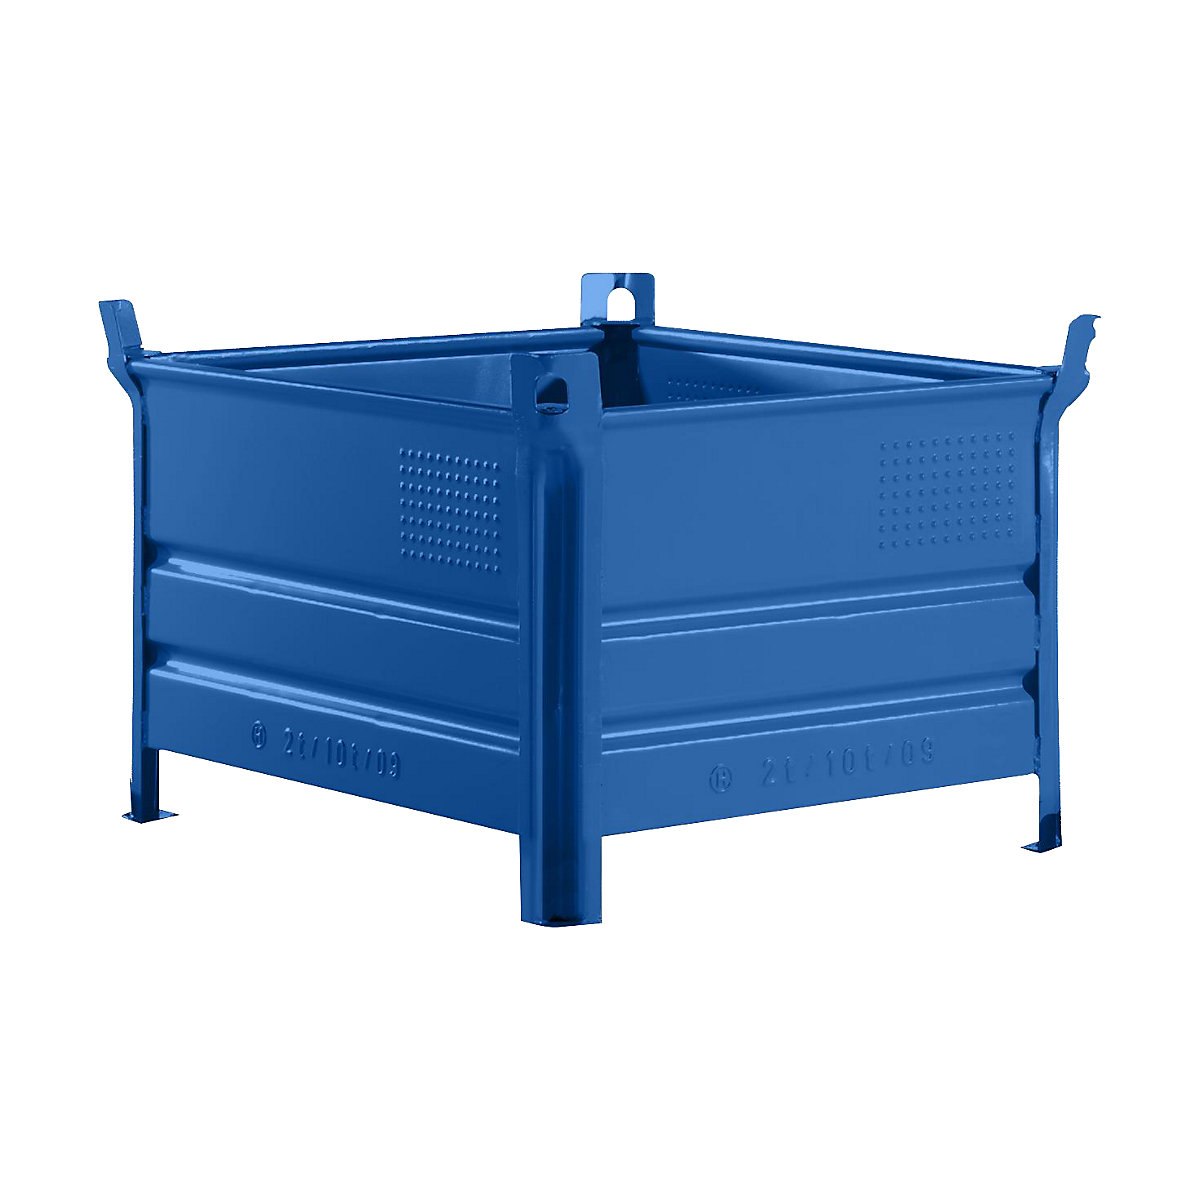 Stohovací přepravka s plnými stěnami – Heson, š x d 800 x 1000 mm, nosnost 1000 kg, modrá, od 5 ks-7